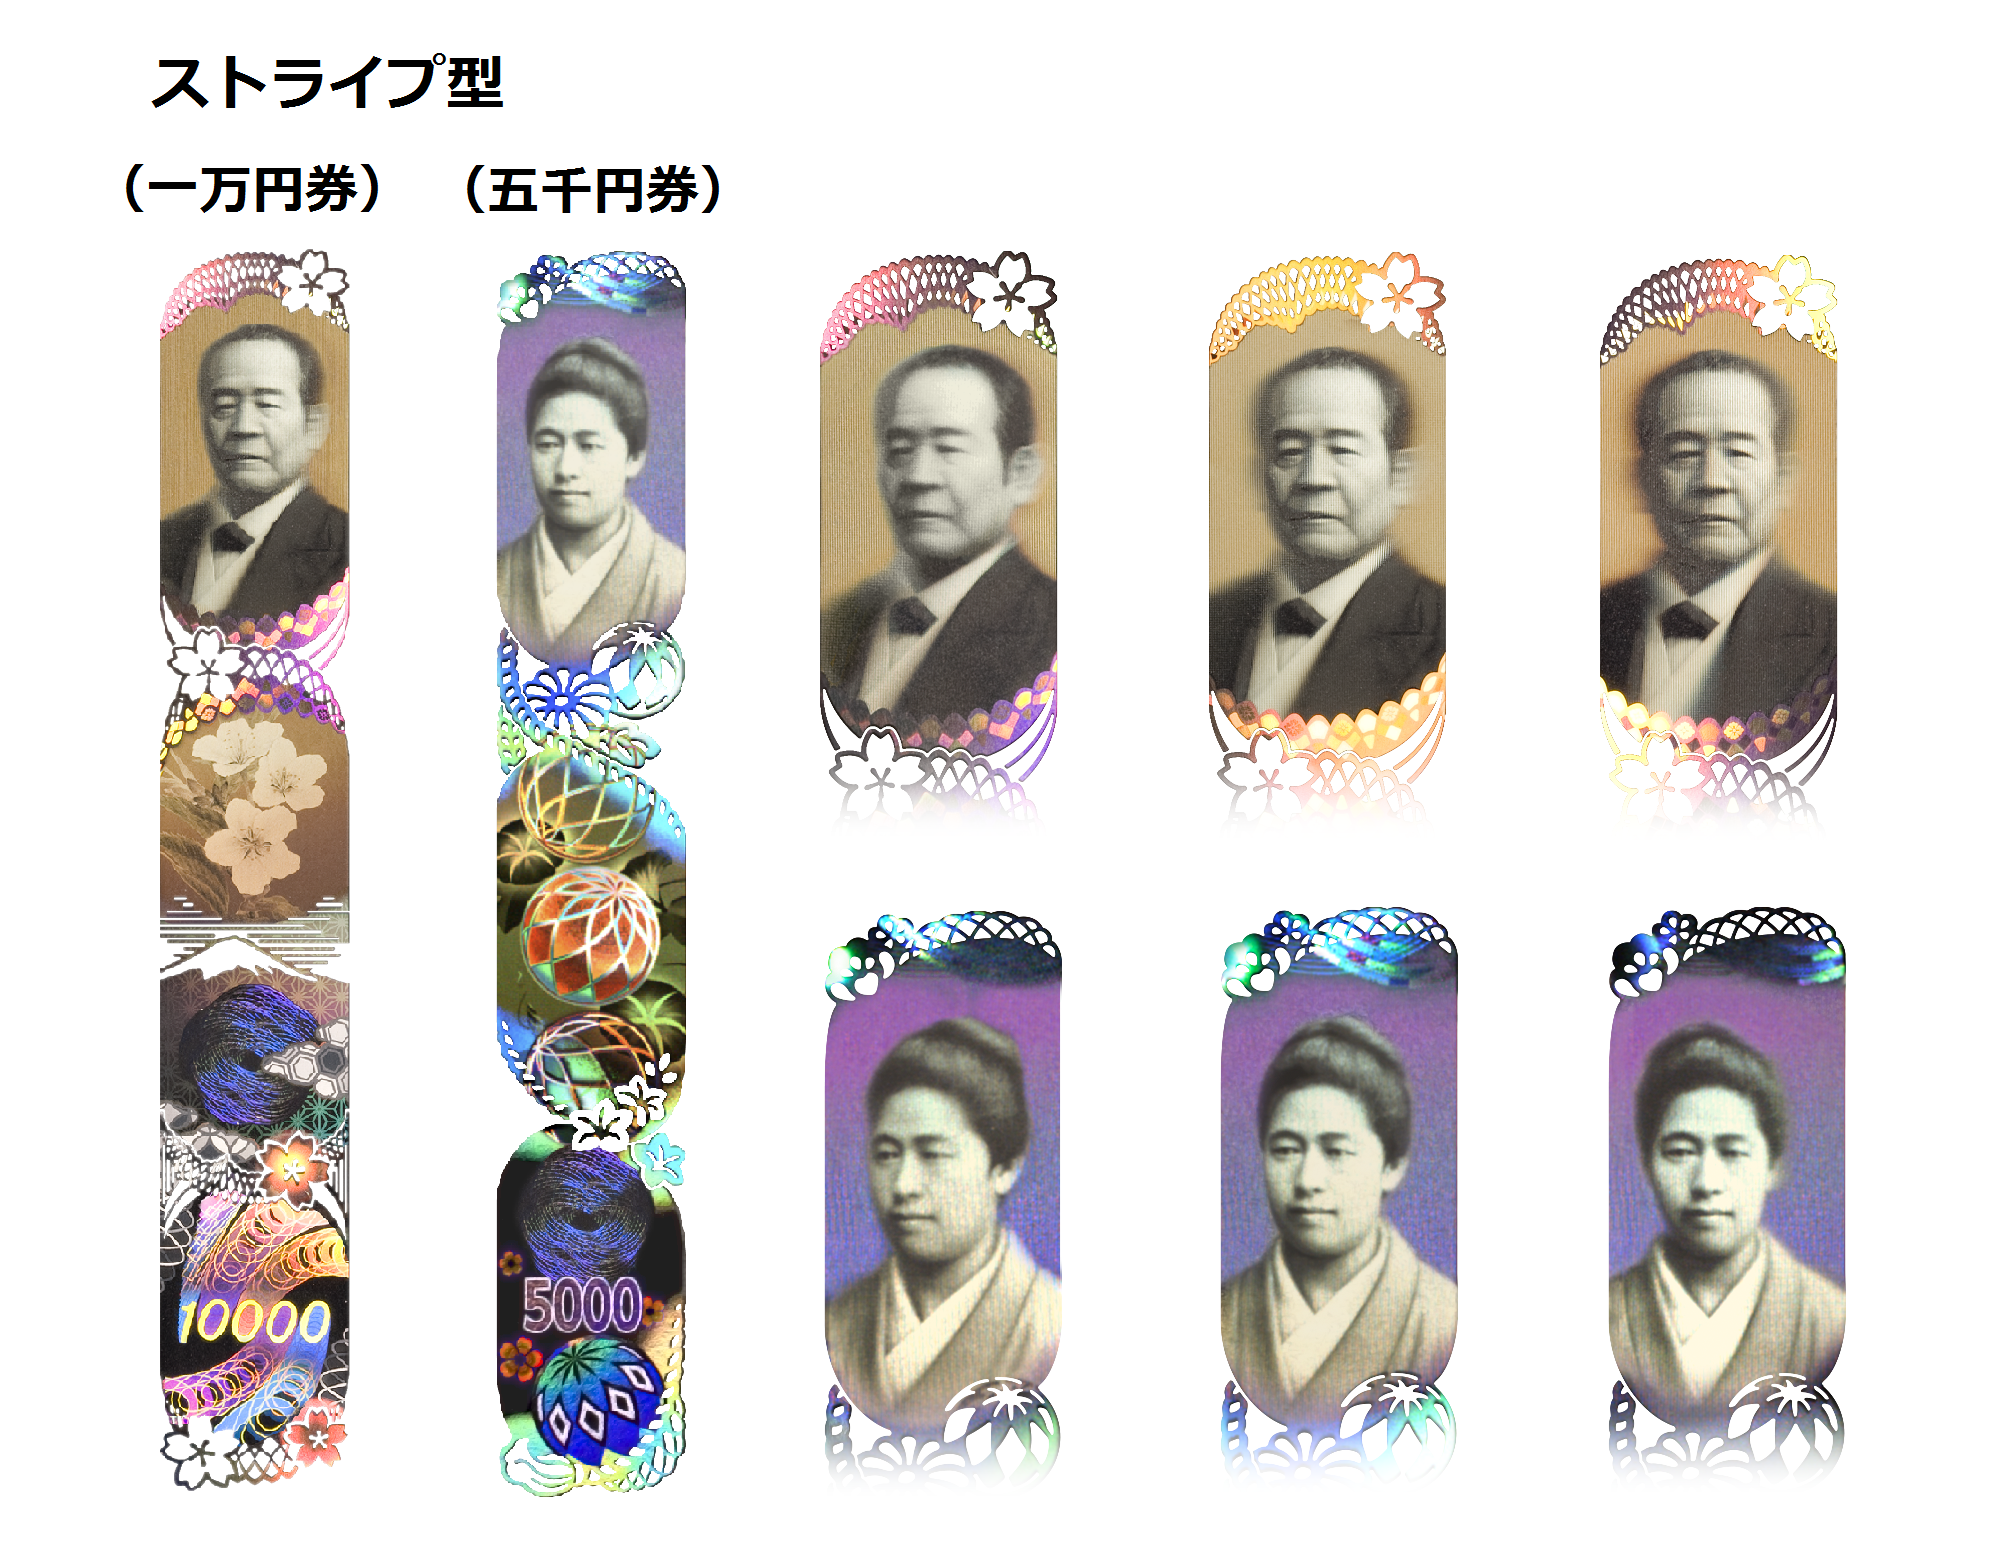 一万円券と五千円券のストライプ型ホログラムの全体画像と、ホログラムを左右に傾けて上段にある肖像を回転させた画像。